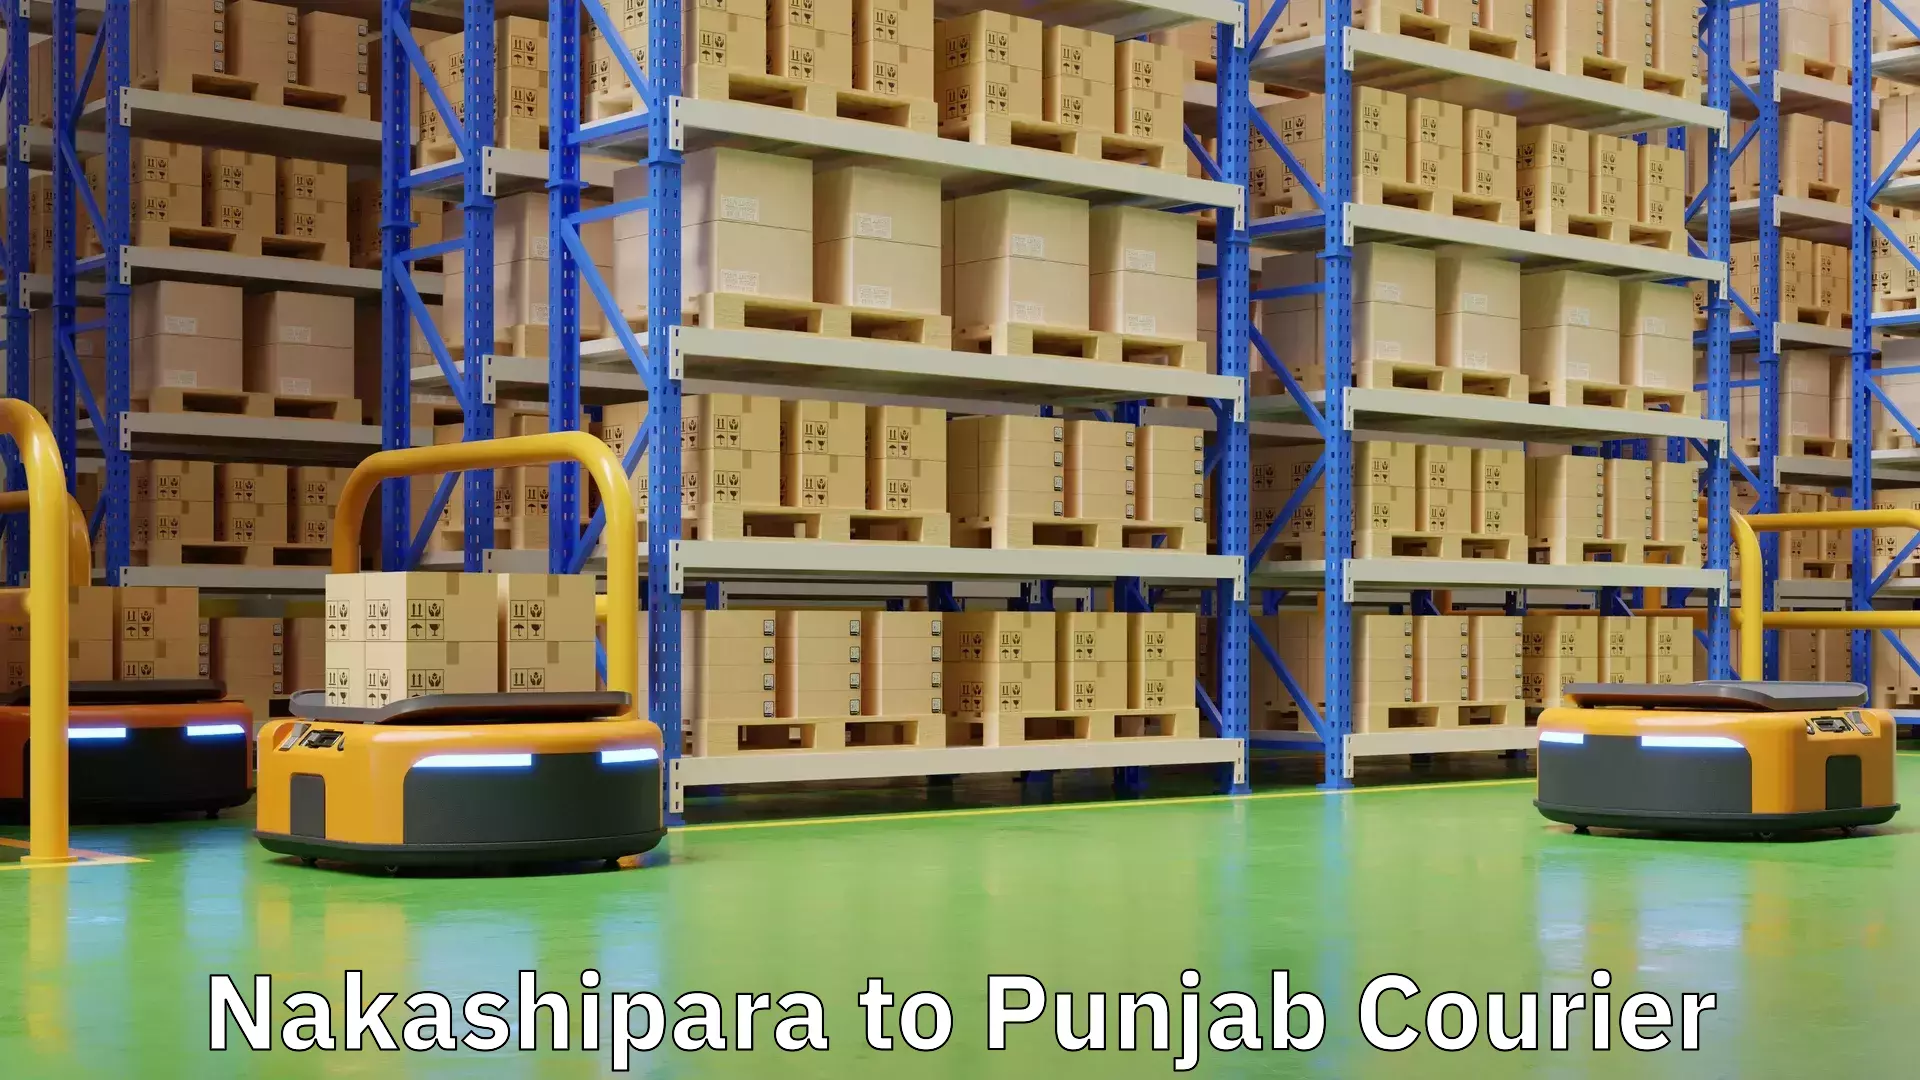 Cargo delivery service Nakashipara to Anandpur Sahib